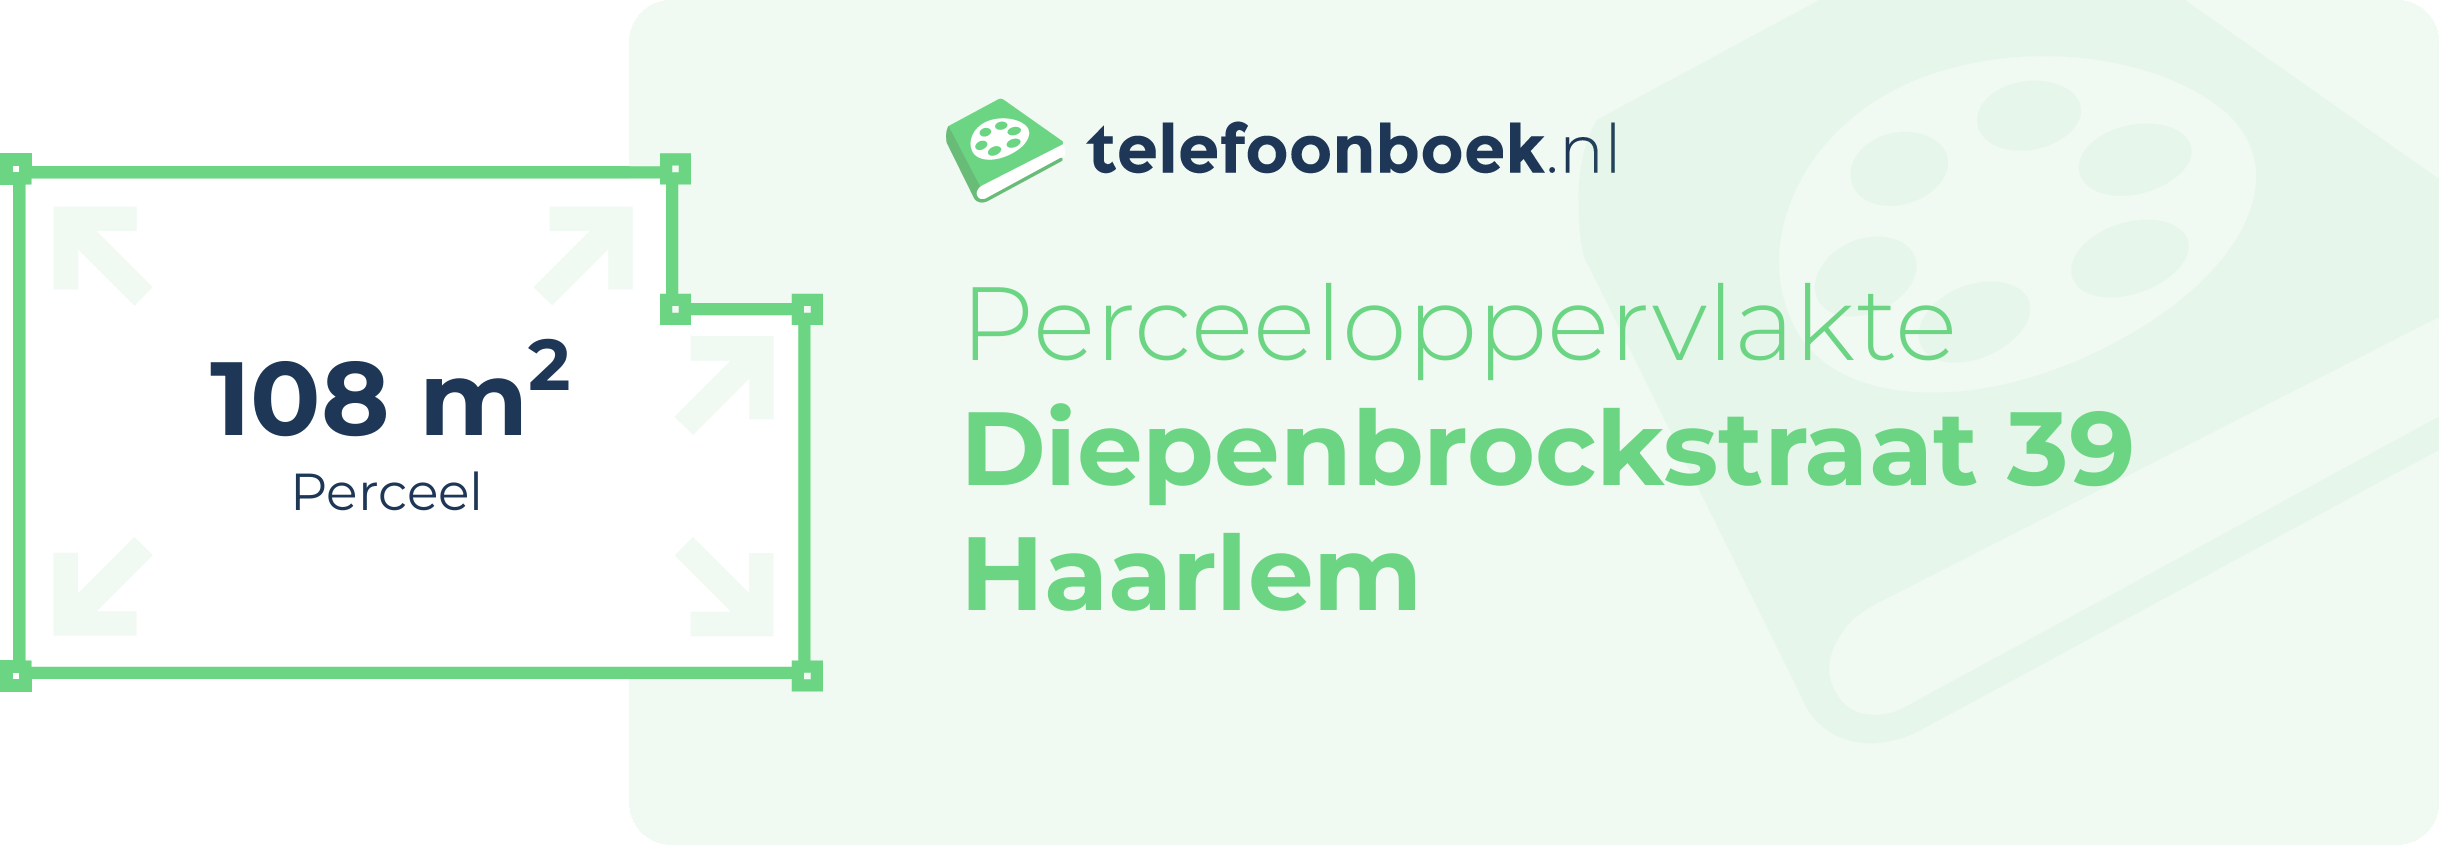 Perceeloppervlakte Diepenbrockstraat 39 Haarlem